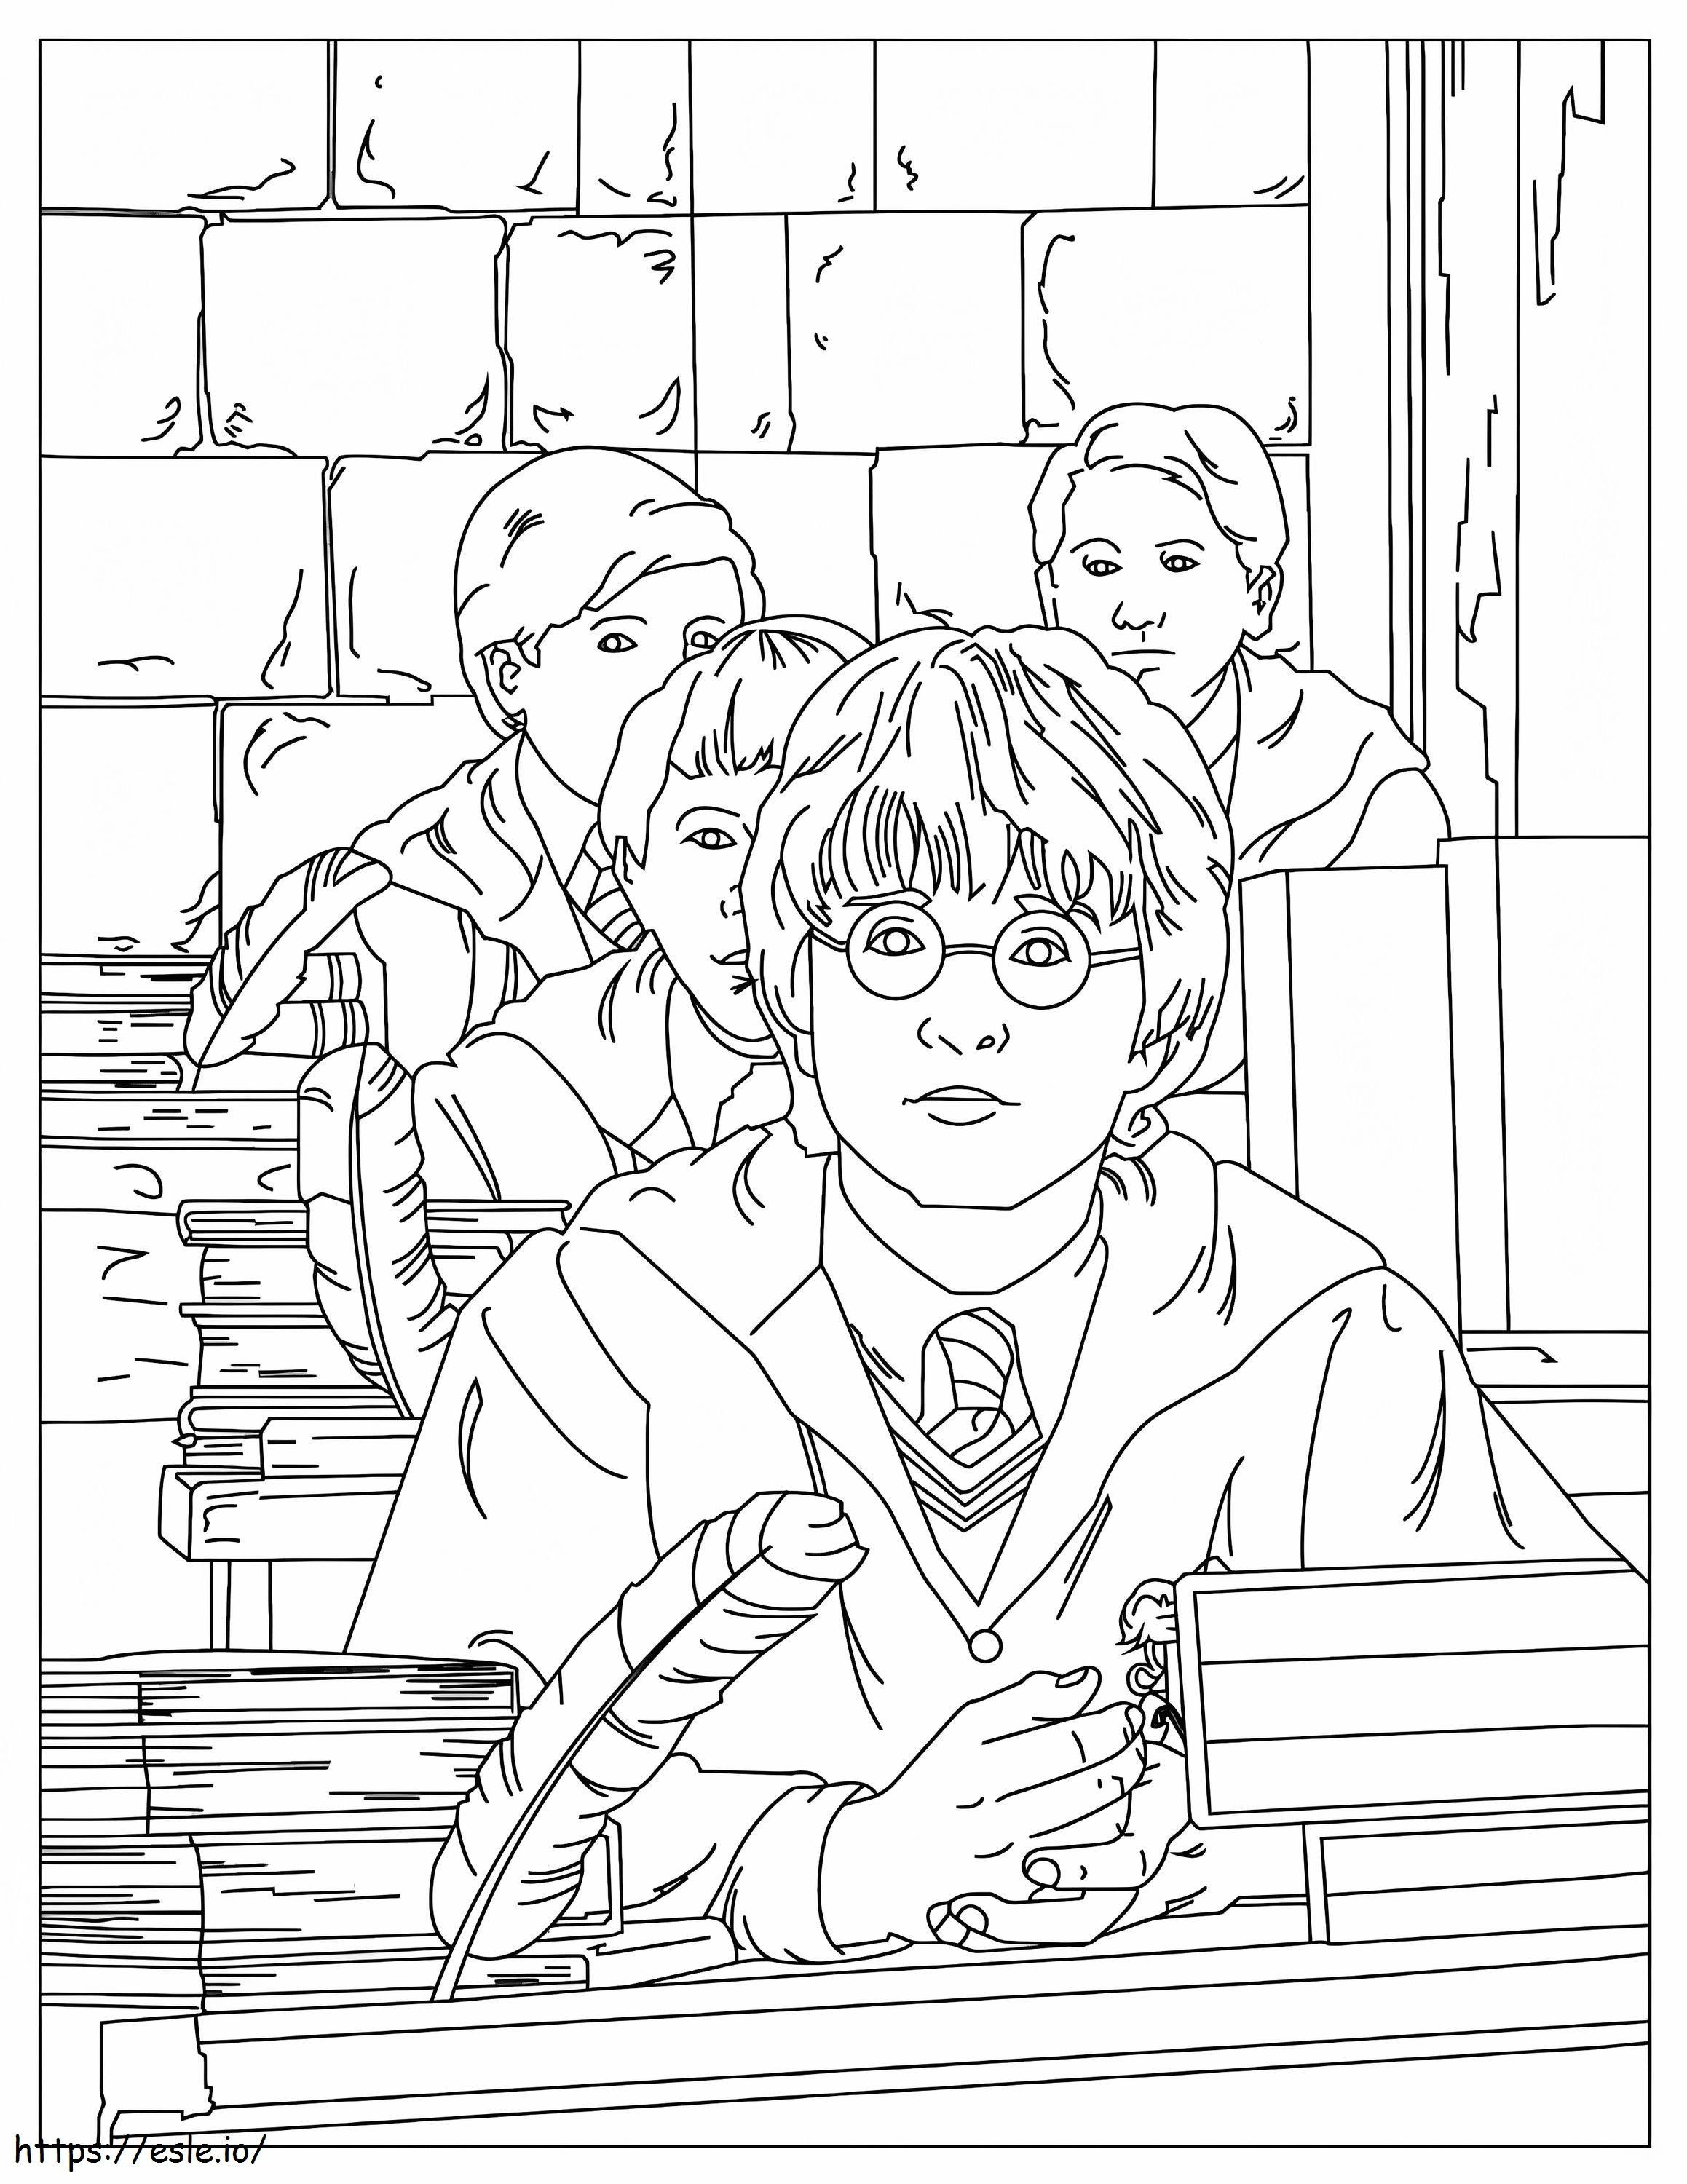 Harry Potter in classe da colorare